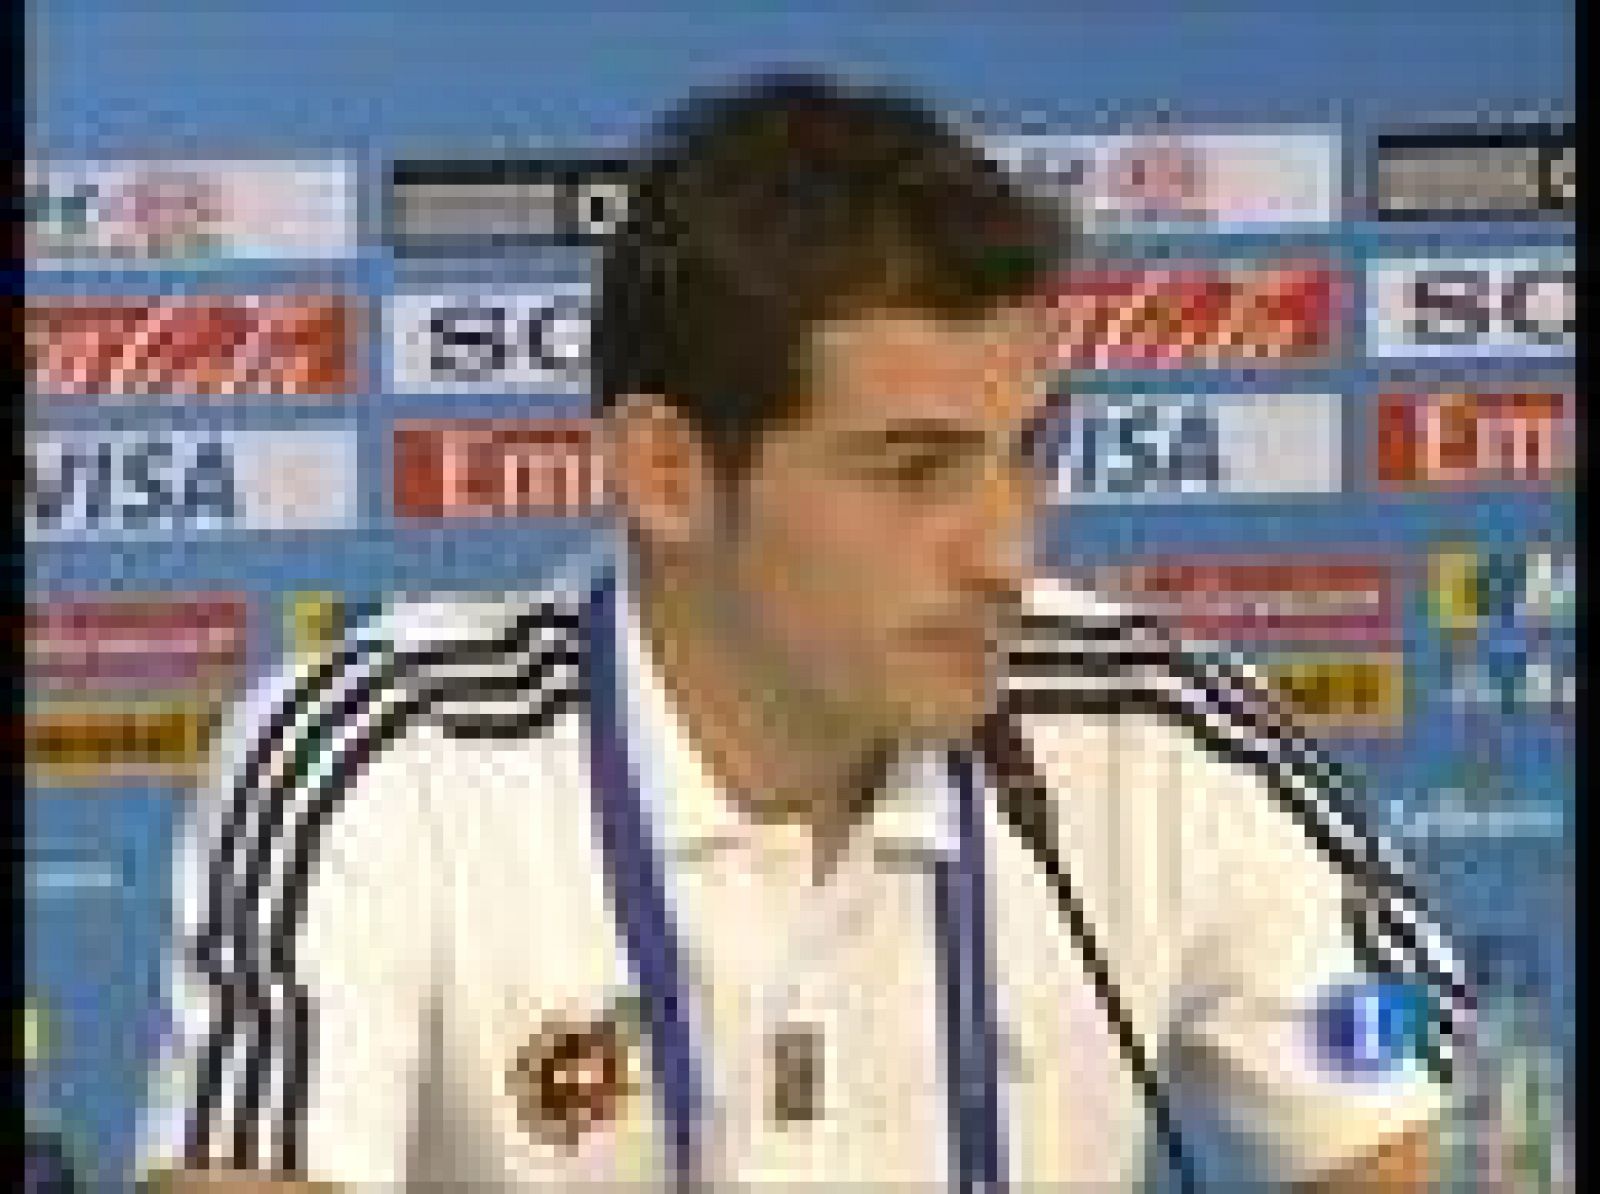 Casillas desea que la selección confirme su papel de favorita en la Copa Confederaciones, impulsada por su racha de victorias. También espera que su amigo Villa pueda acabar vestido de blanco, pero eso aún no se sabe 